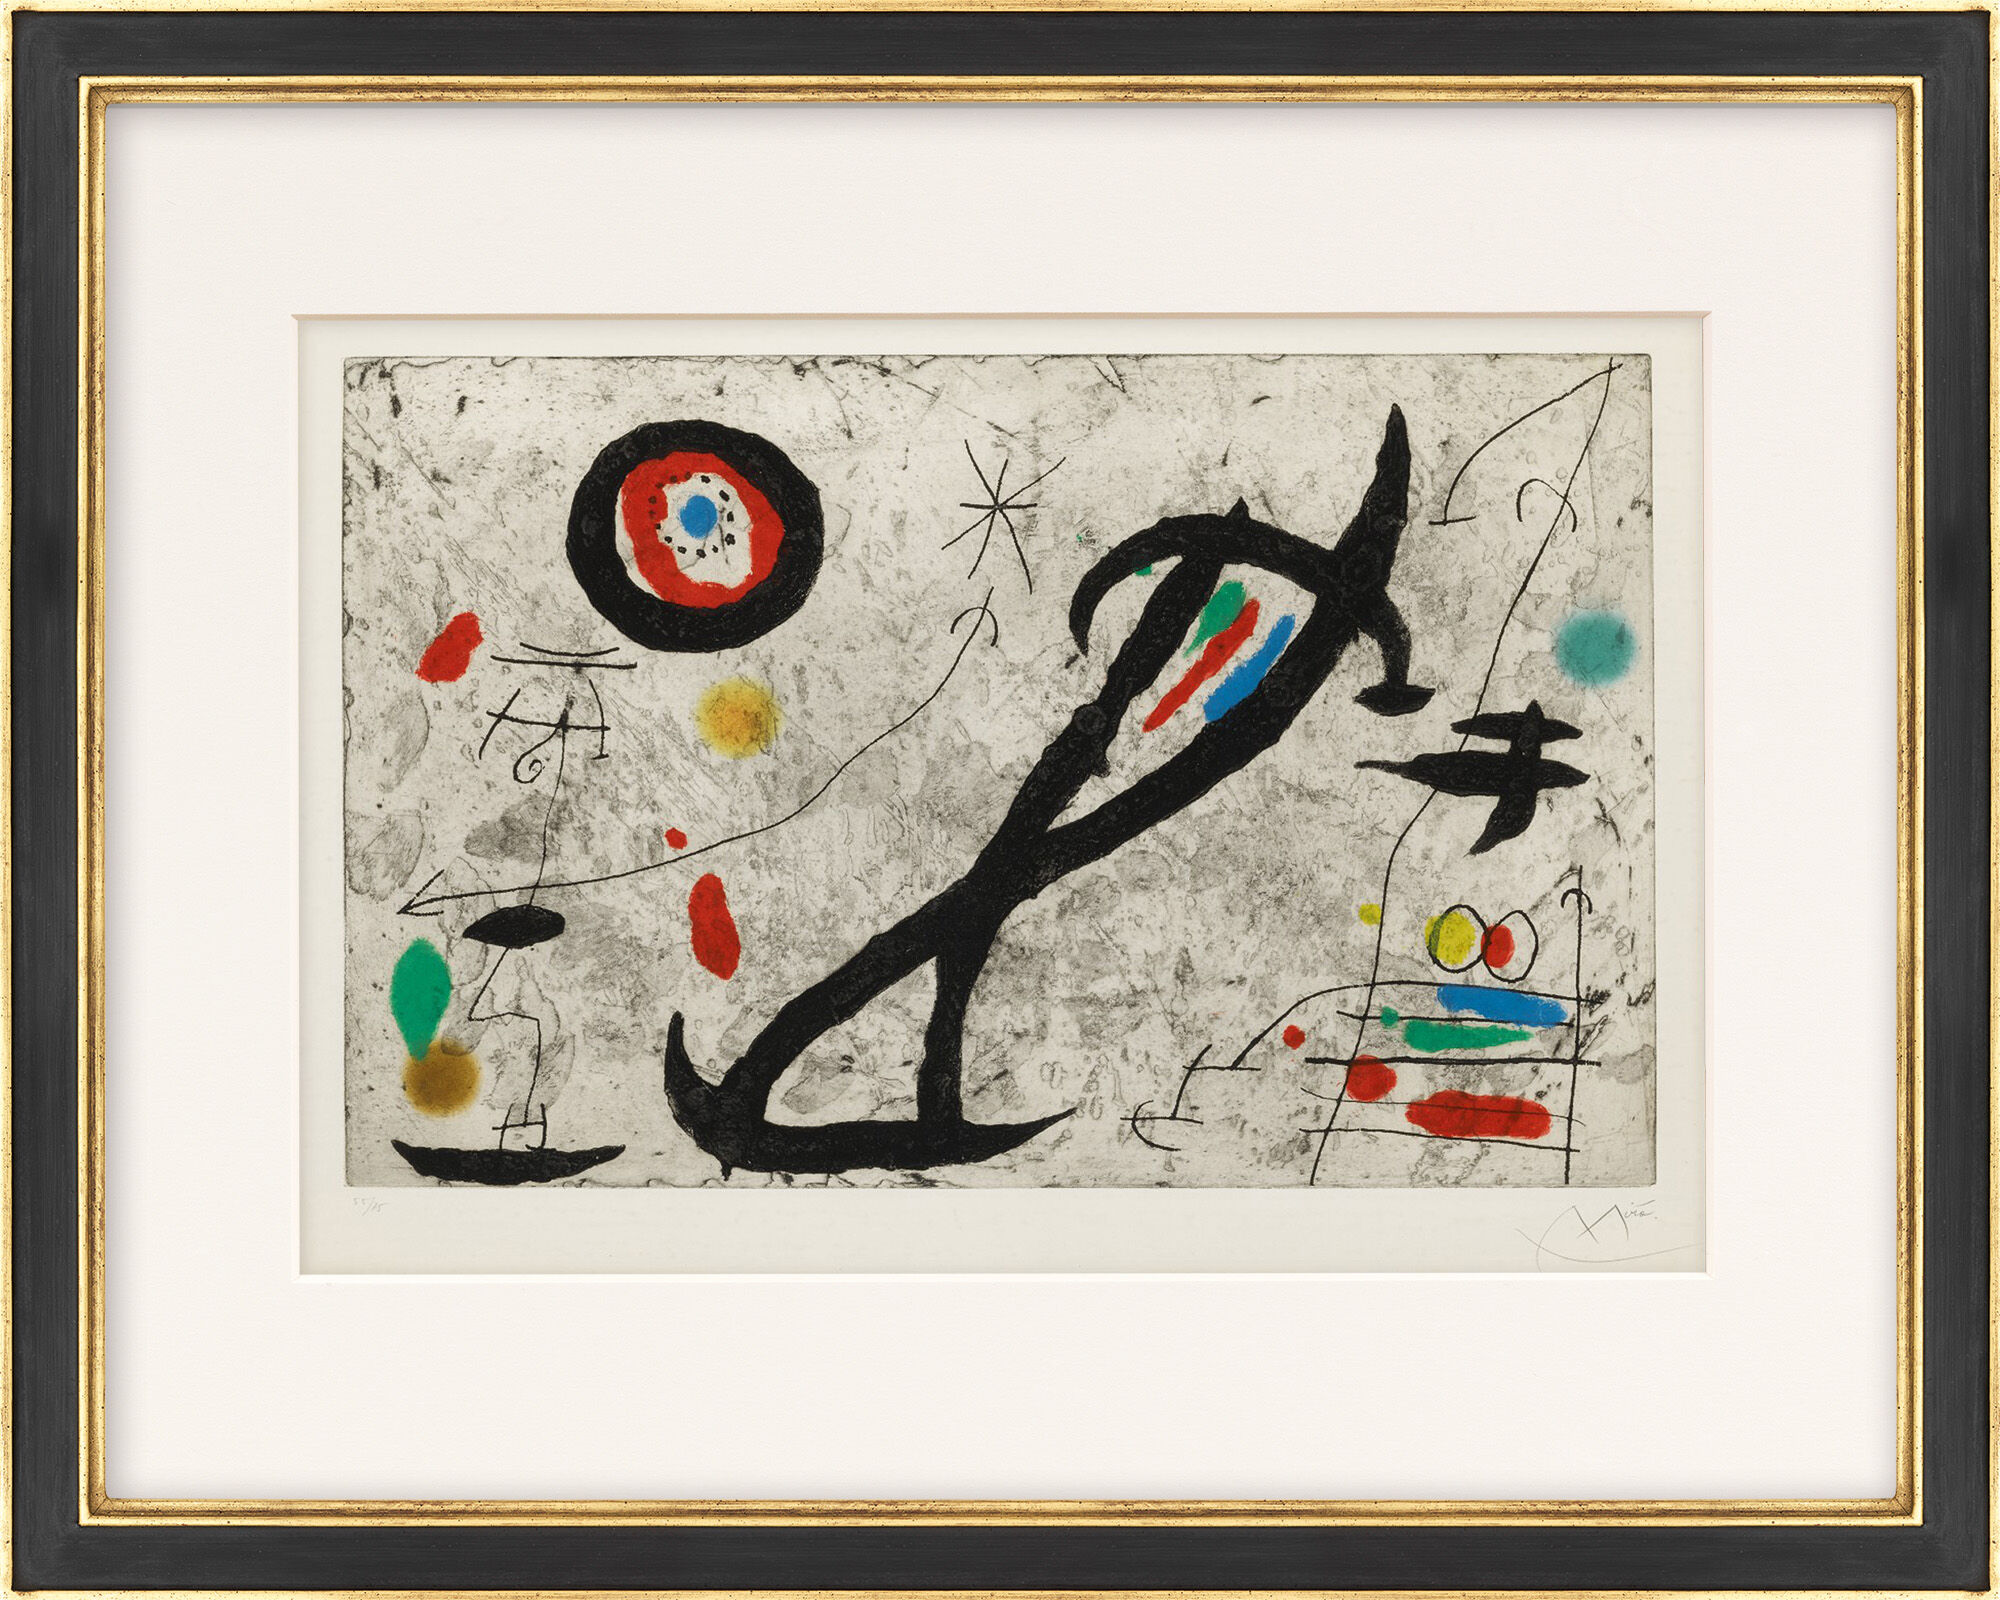 Beeld "Tracé sur la paroi V" (1967) von Joan Miró